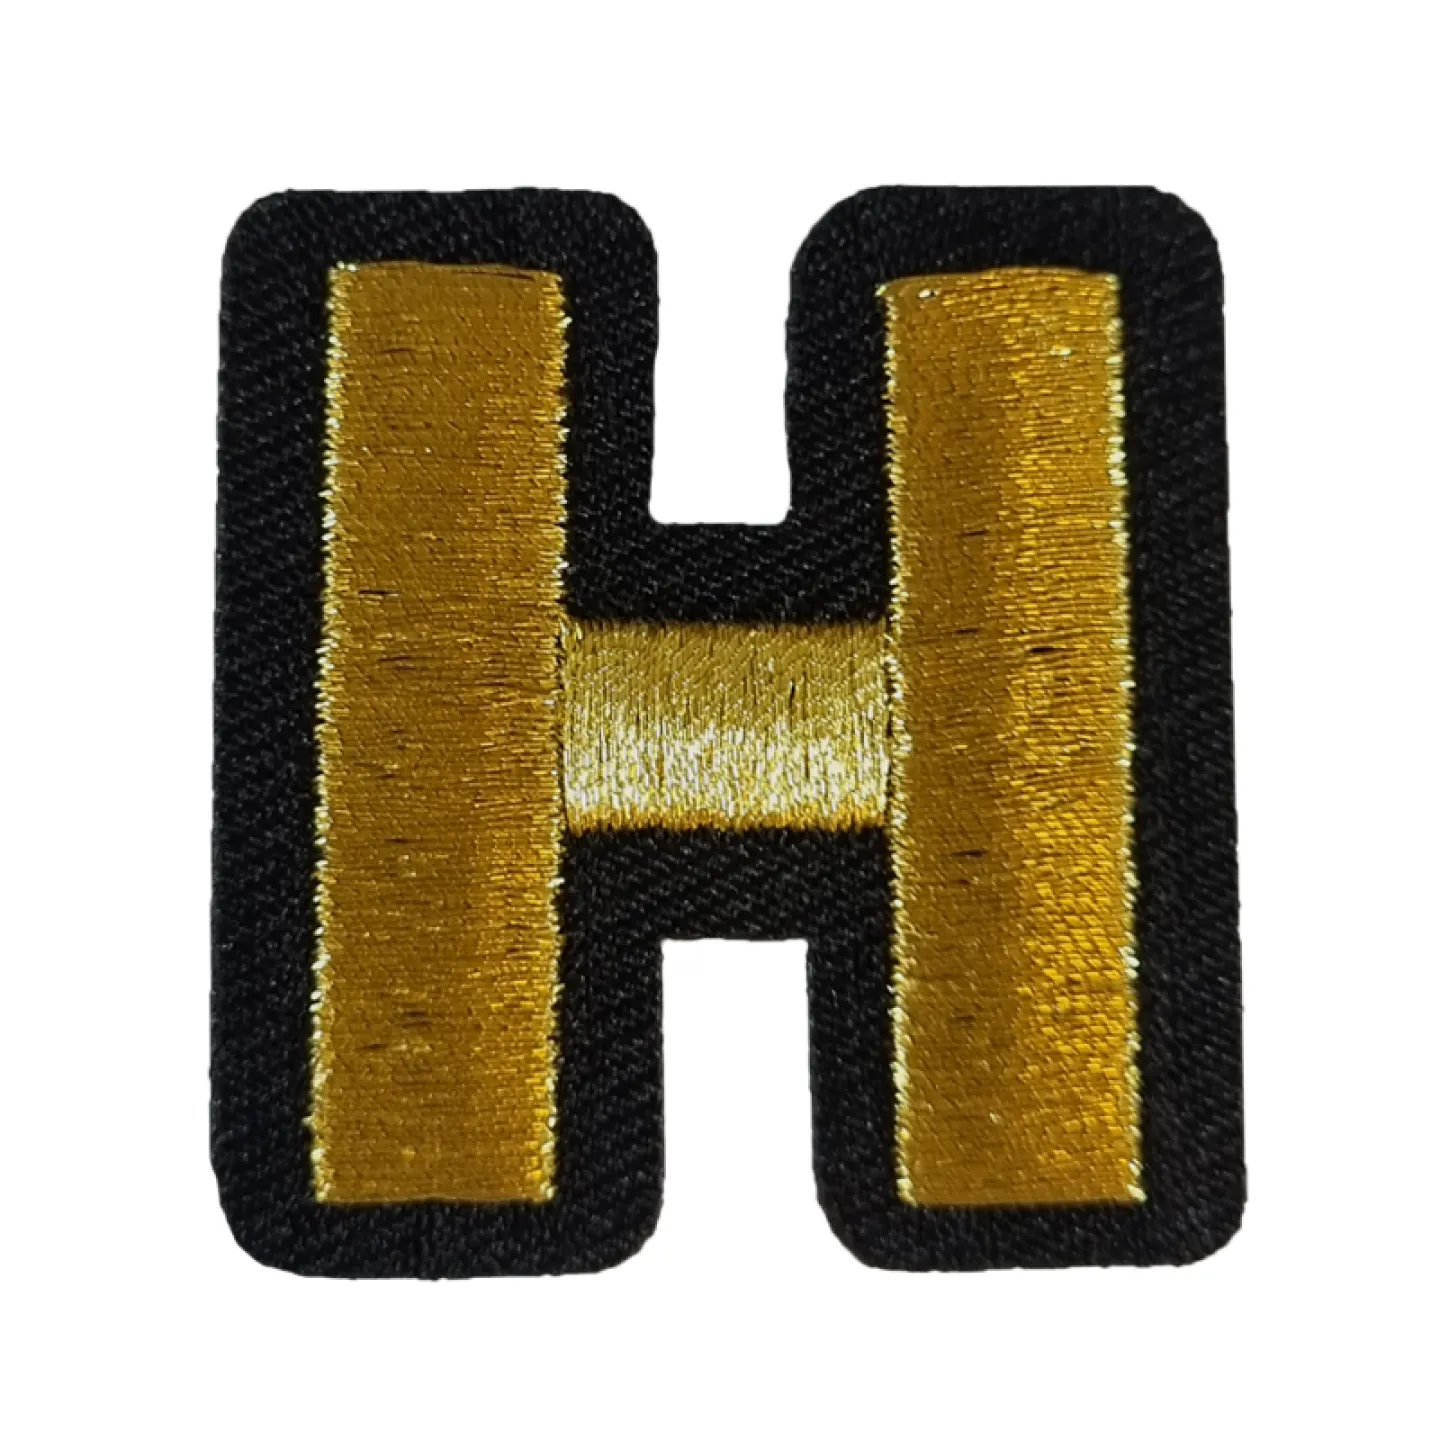 Kruikenstad embleem gouden letter H goedkoop.